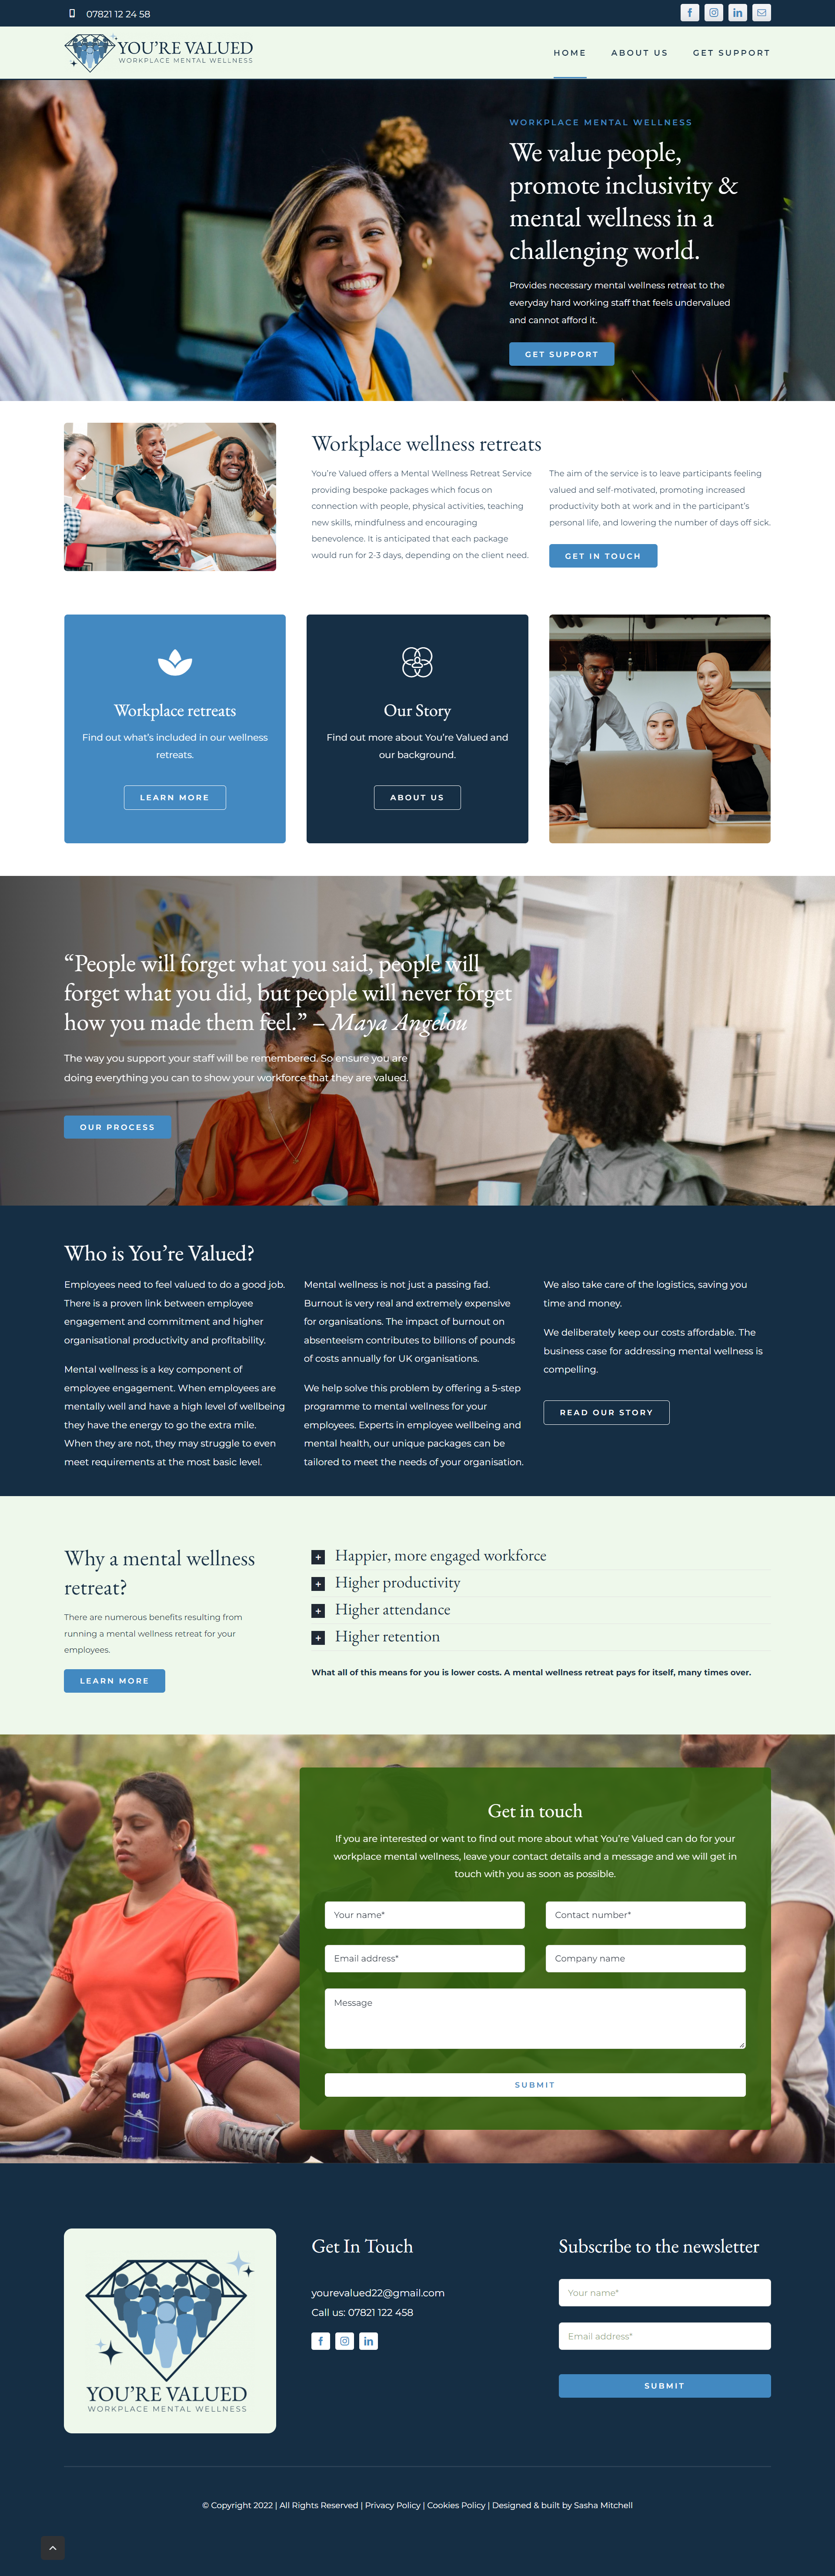 Youre valued - Website Design